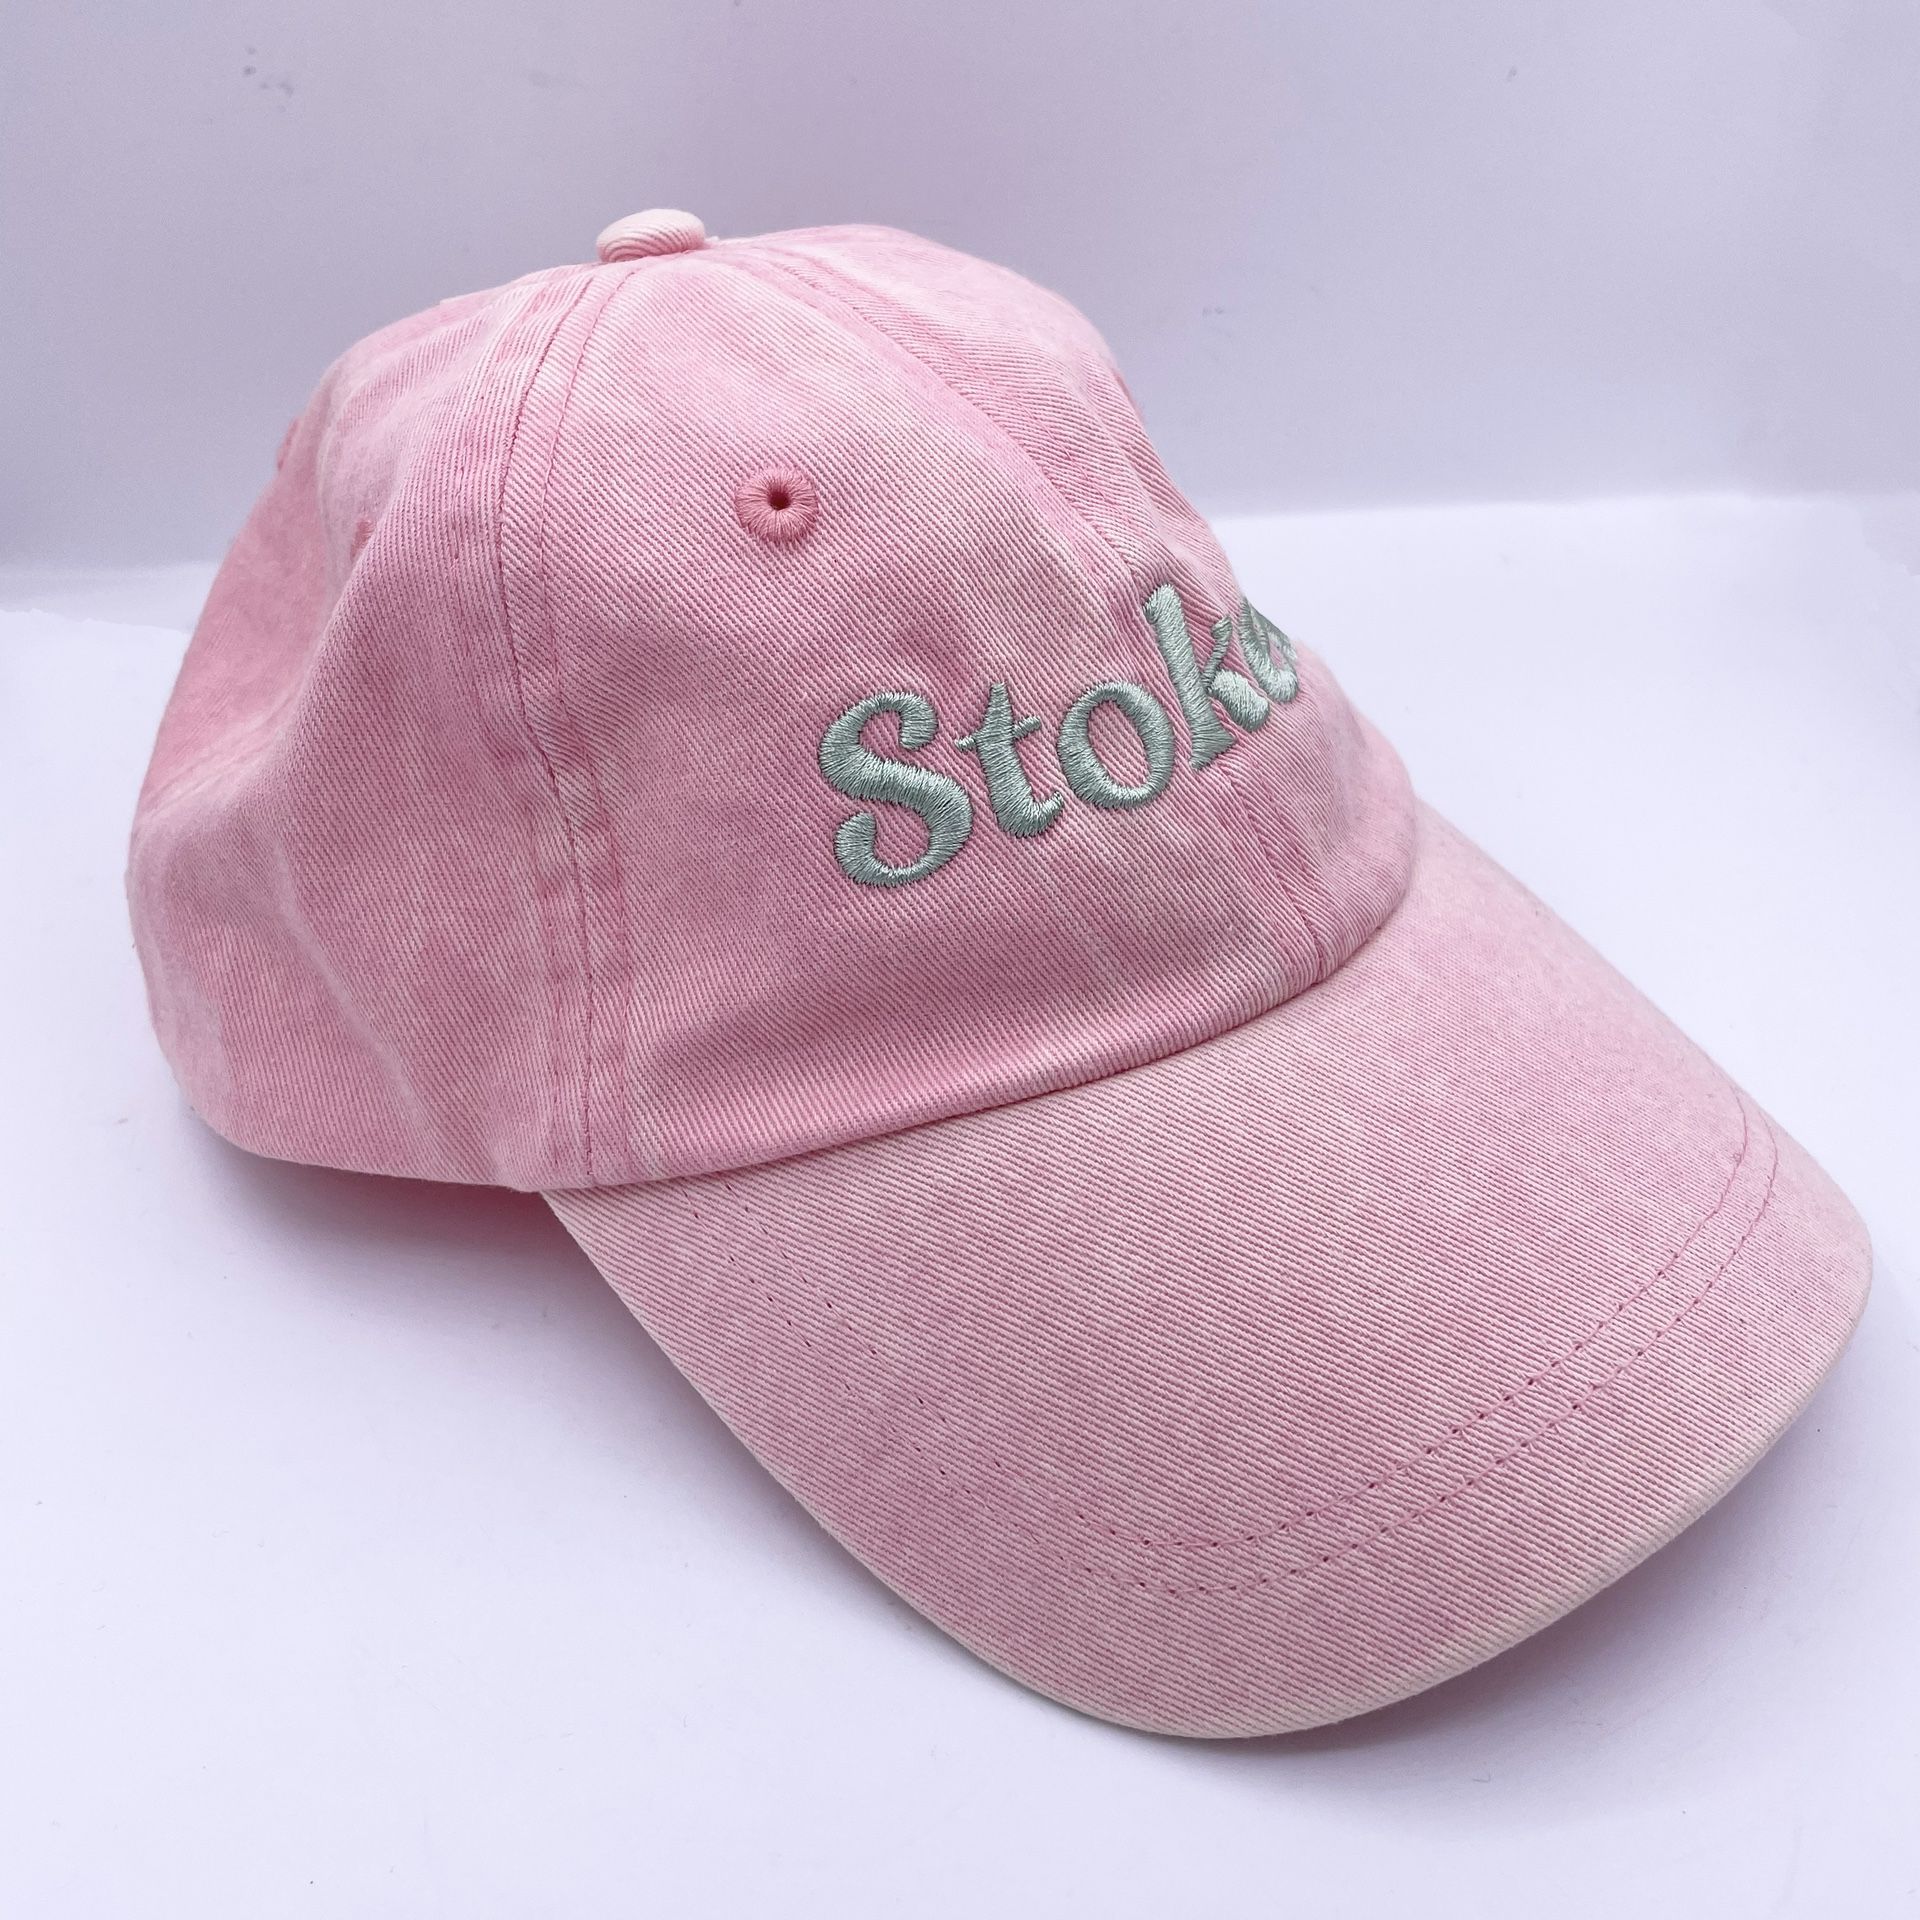 Billabong stoked pink dad hat